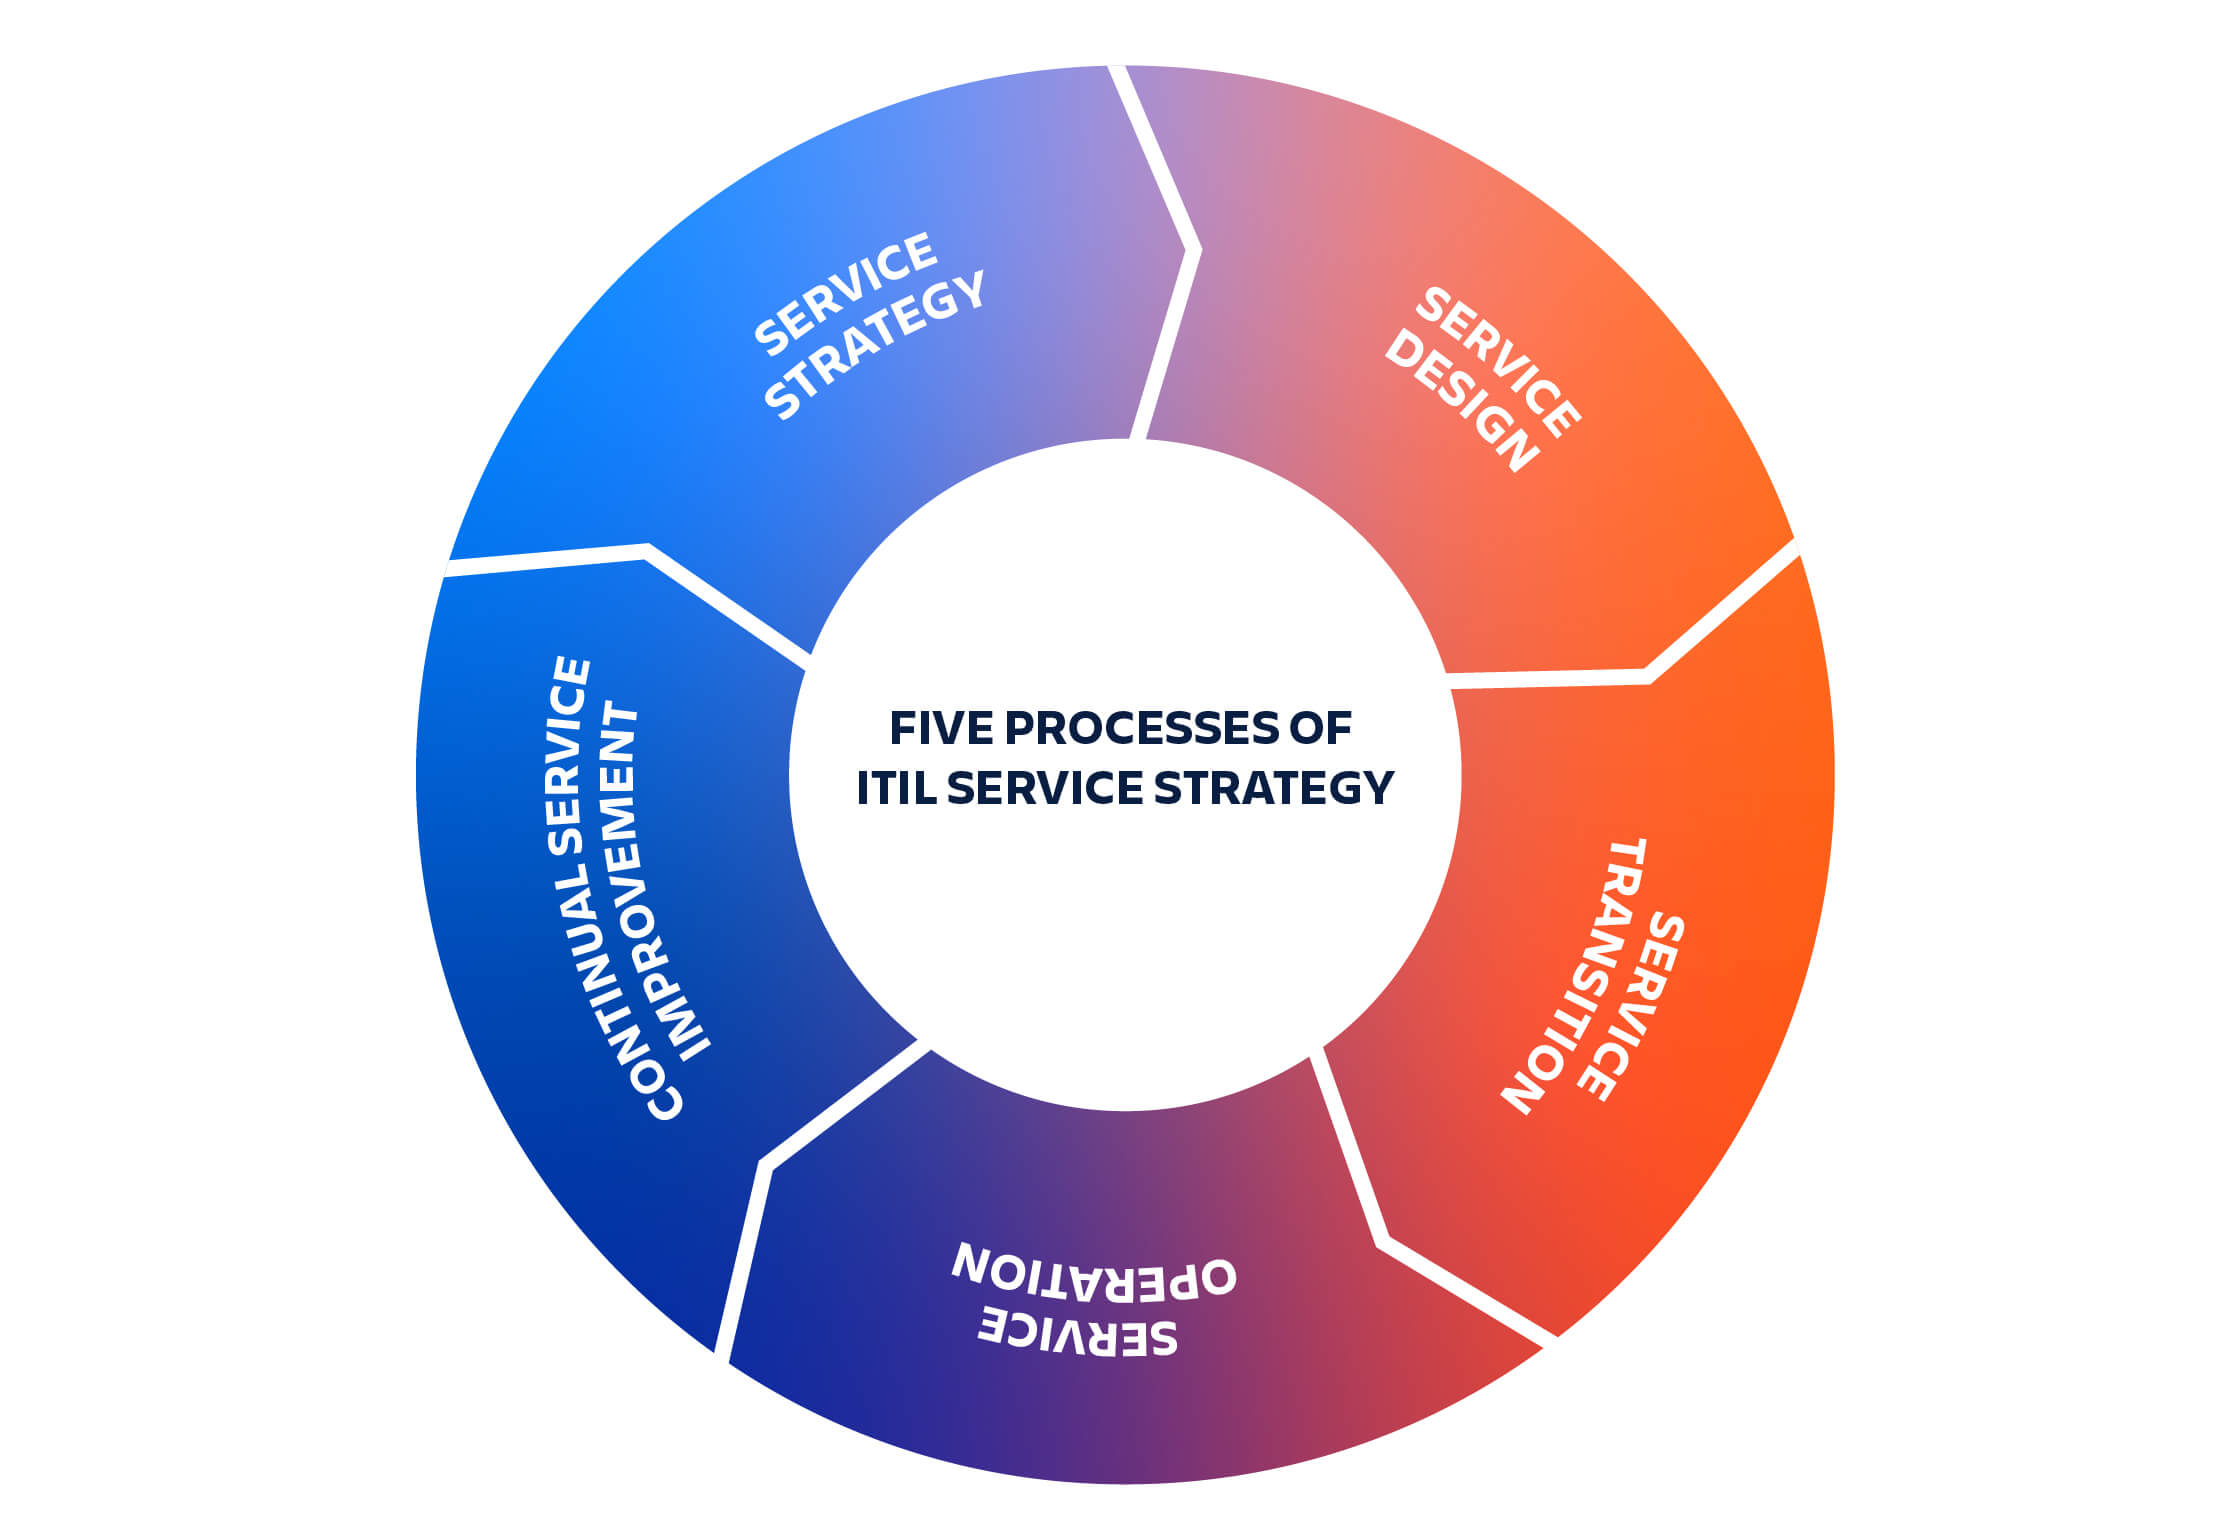 Vijf processen van de ITIL-servicestrategie: de servicestrategie gaat over in serviceontwerp, gaat over in servicetransitie, gaat over in serviceoperations, gaat over in continue serviceverbetering